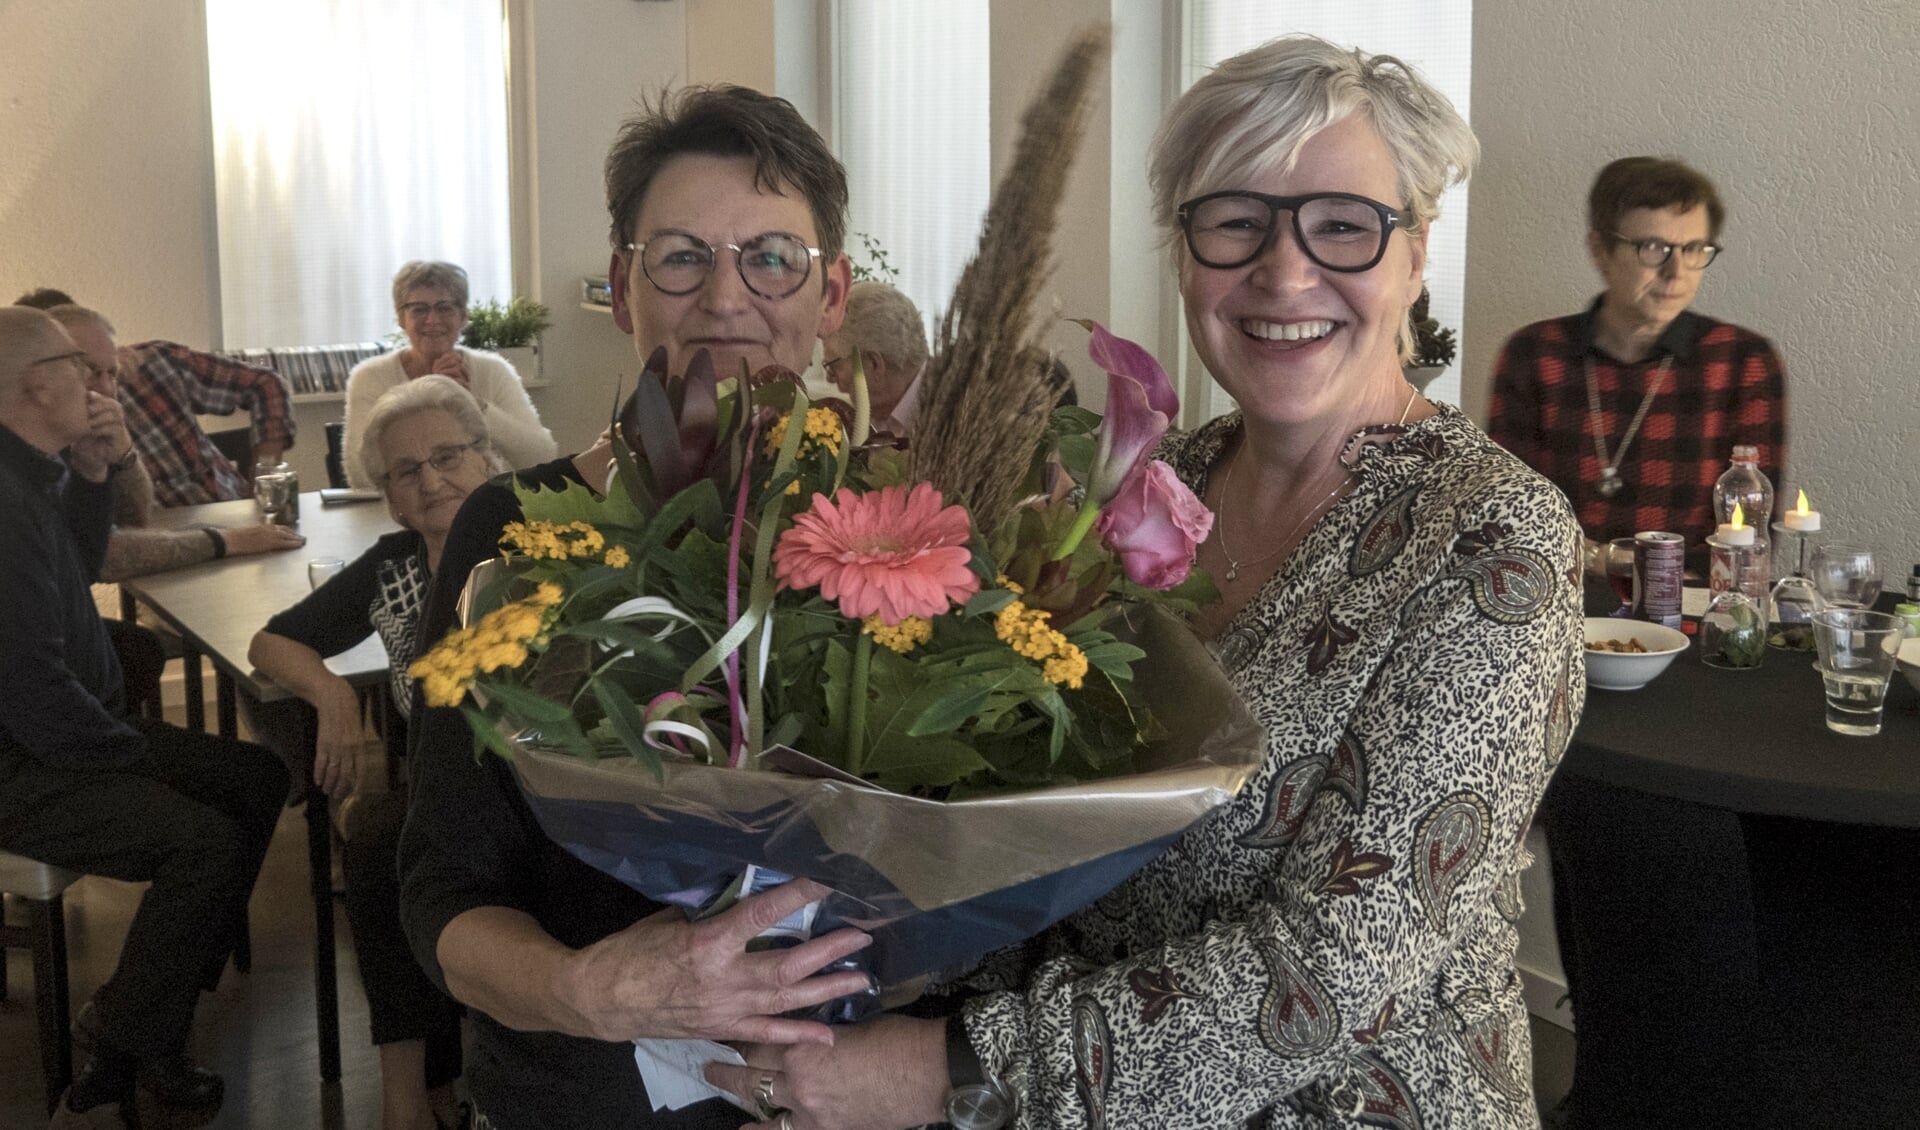 Sjanie van den Dool (manager Wonen bij Poort6) feliciteert Binnen de Vesting met de nieuwe naam 